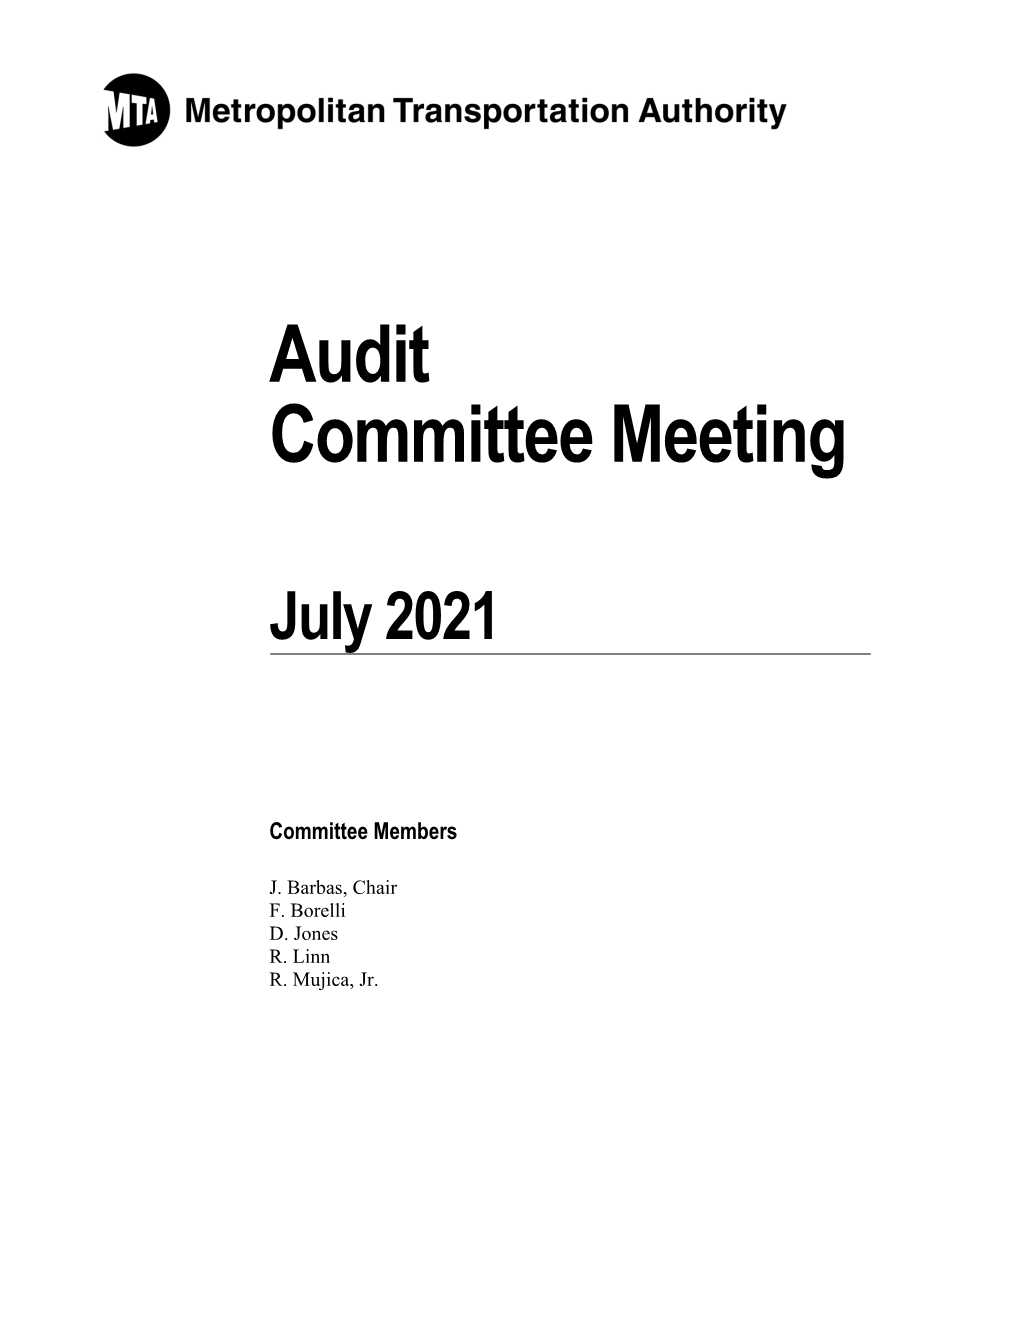 Audit Committee Meeting